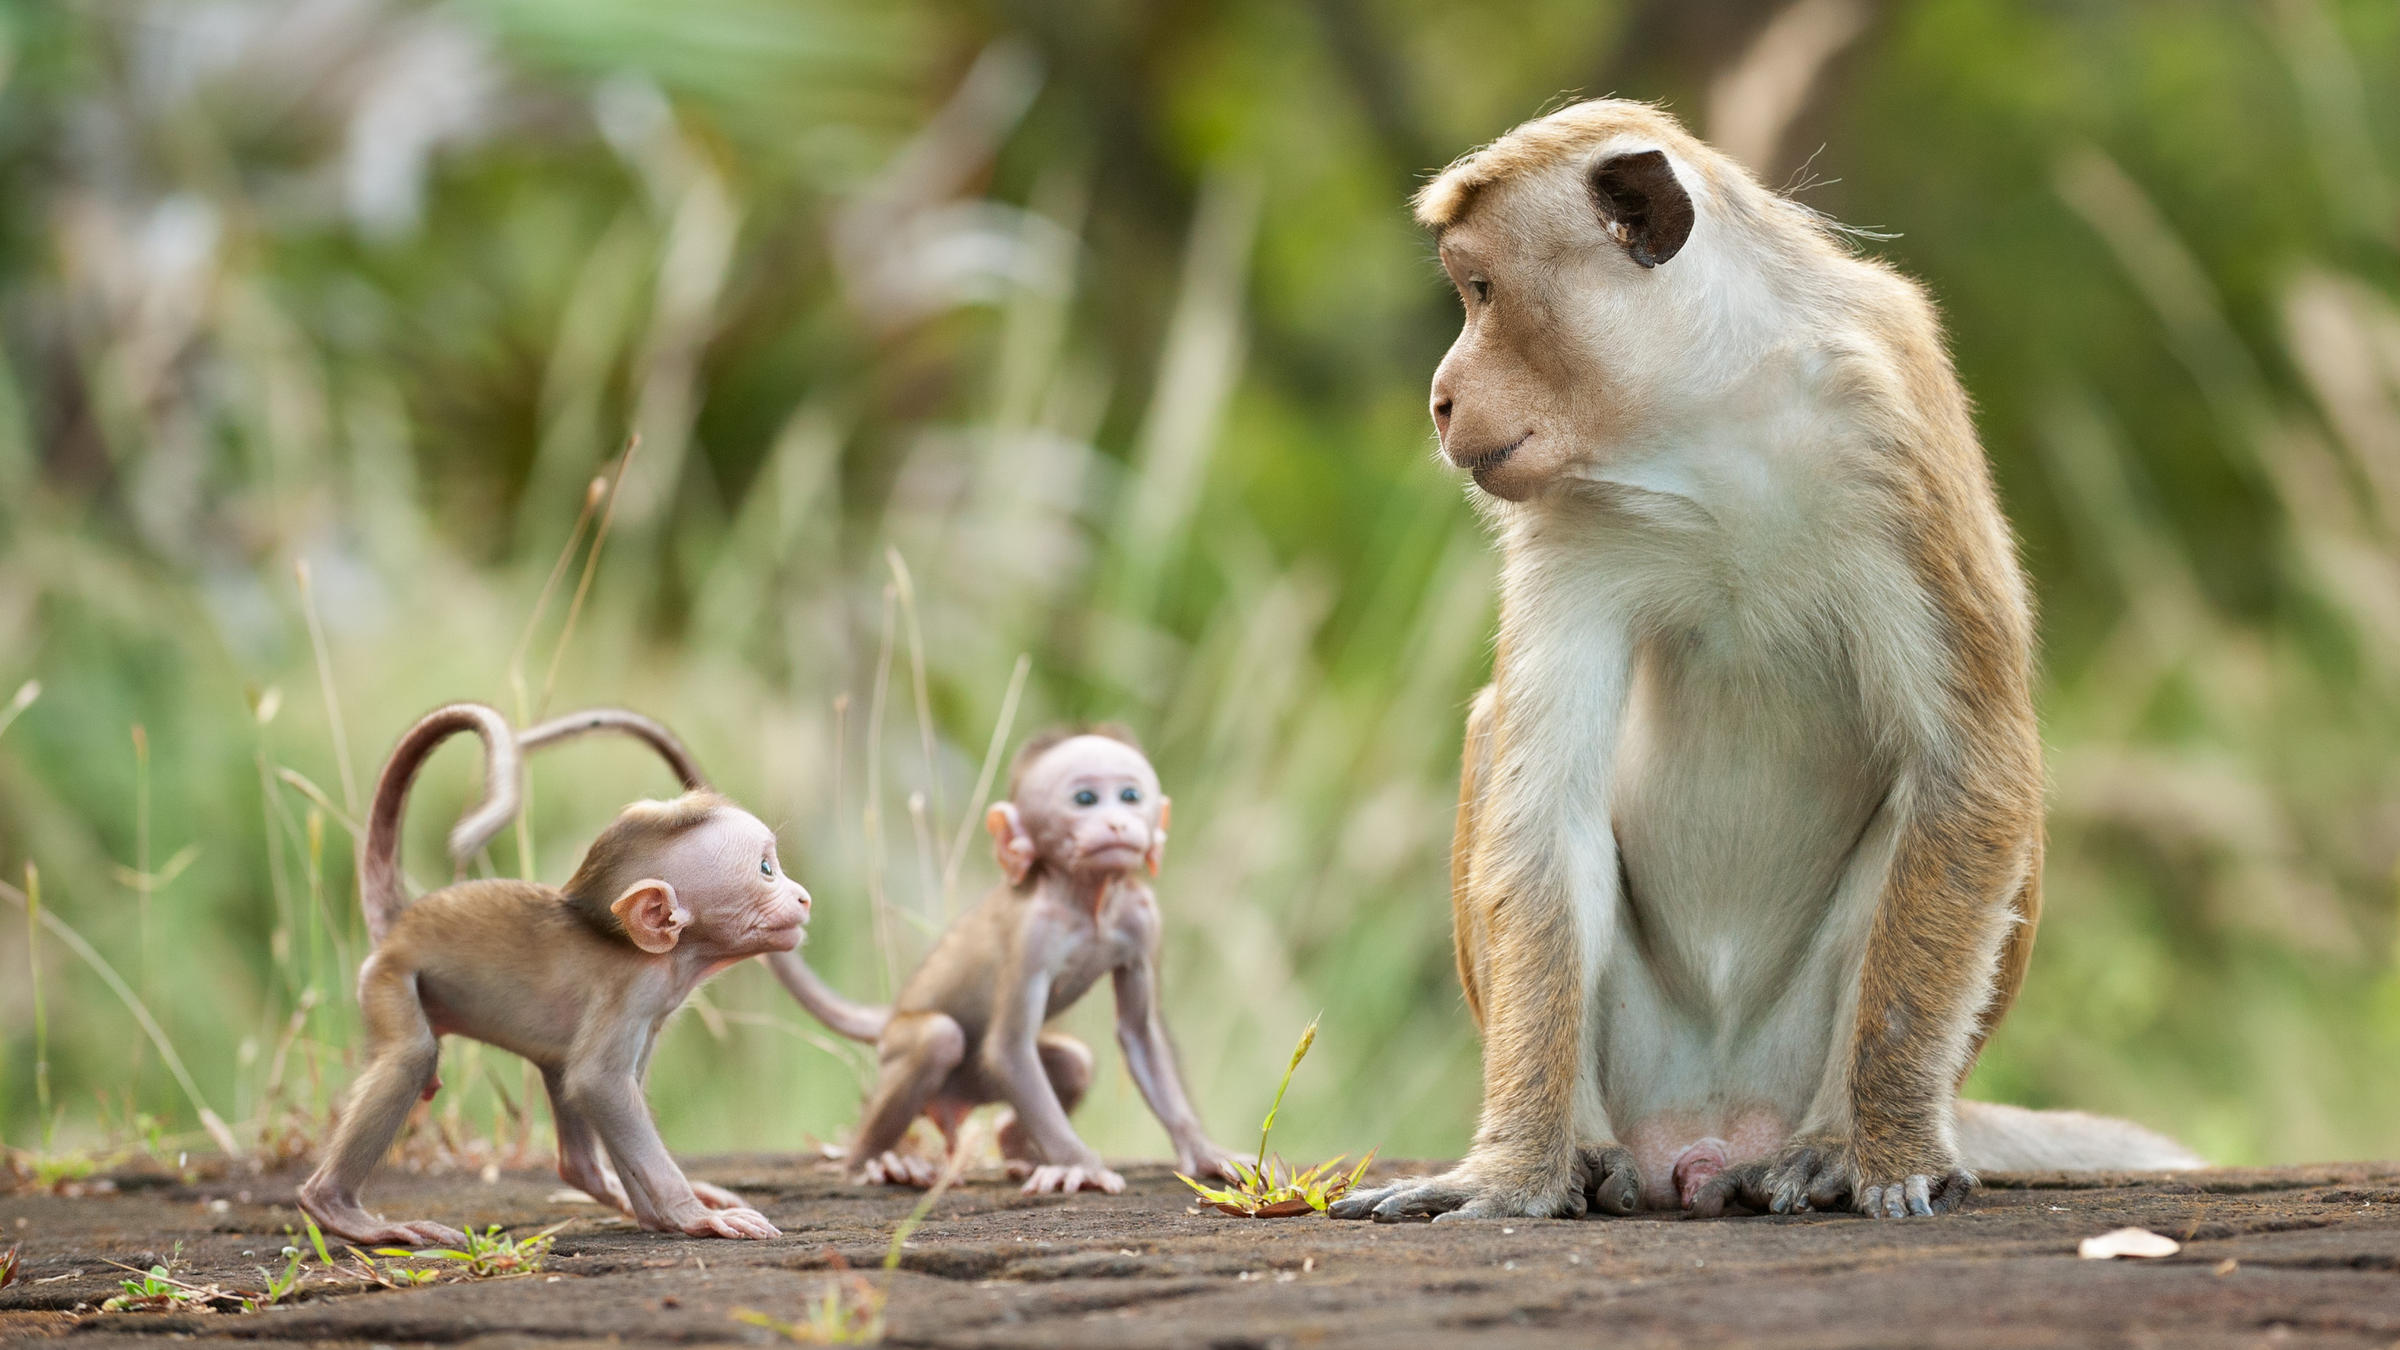 Con khỉ là một trong những loài động vật vô cùng thông minh và đáng yêu. Tổng hợp hình ảnh con khỉ đẹp chắc chắn sẽ đem lại cho bạn nhiều cảm xúc thú vị. Từ những tấm hình đáng yêu cho tới những hình ảnh vui nhộn, bạn sẽ không thể rời mắt khỏi những chú khỉ xinh đẹp này.